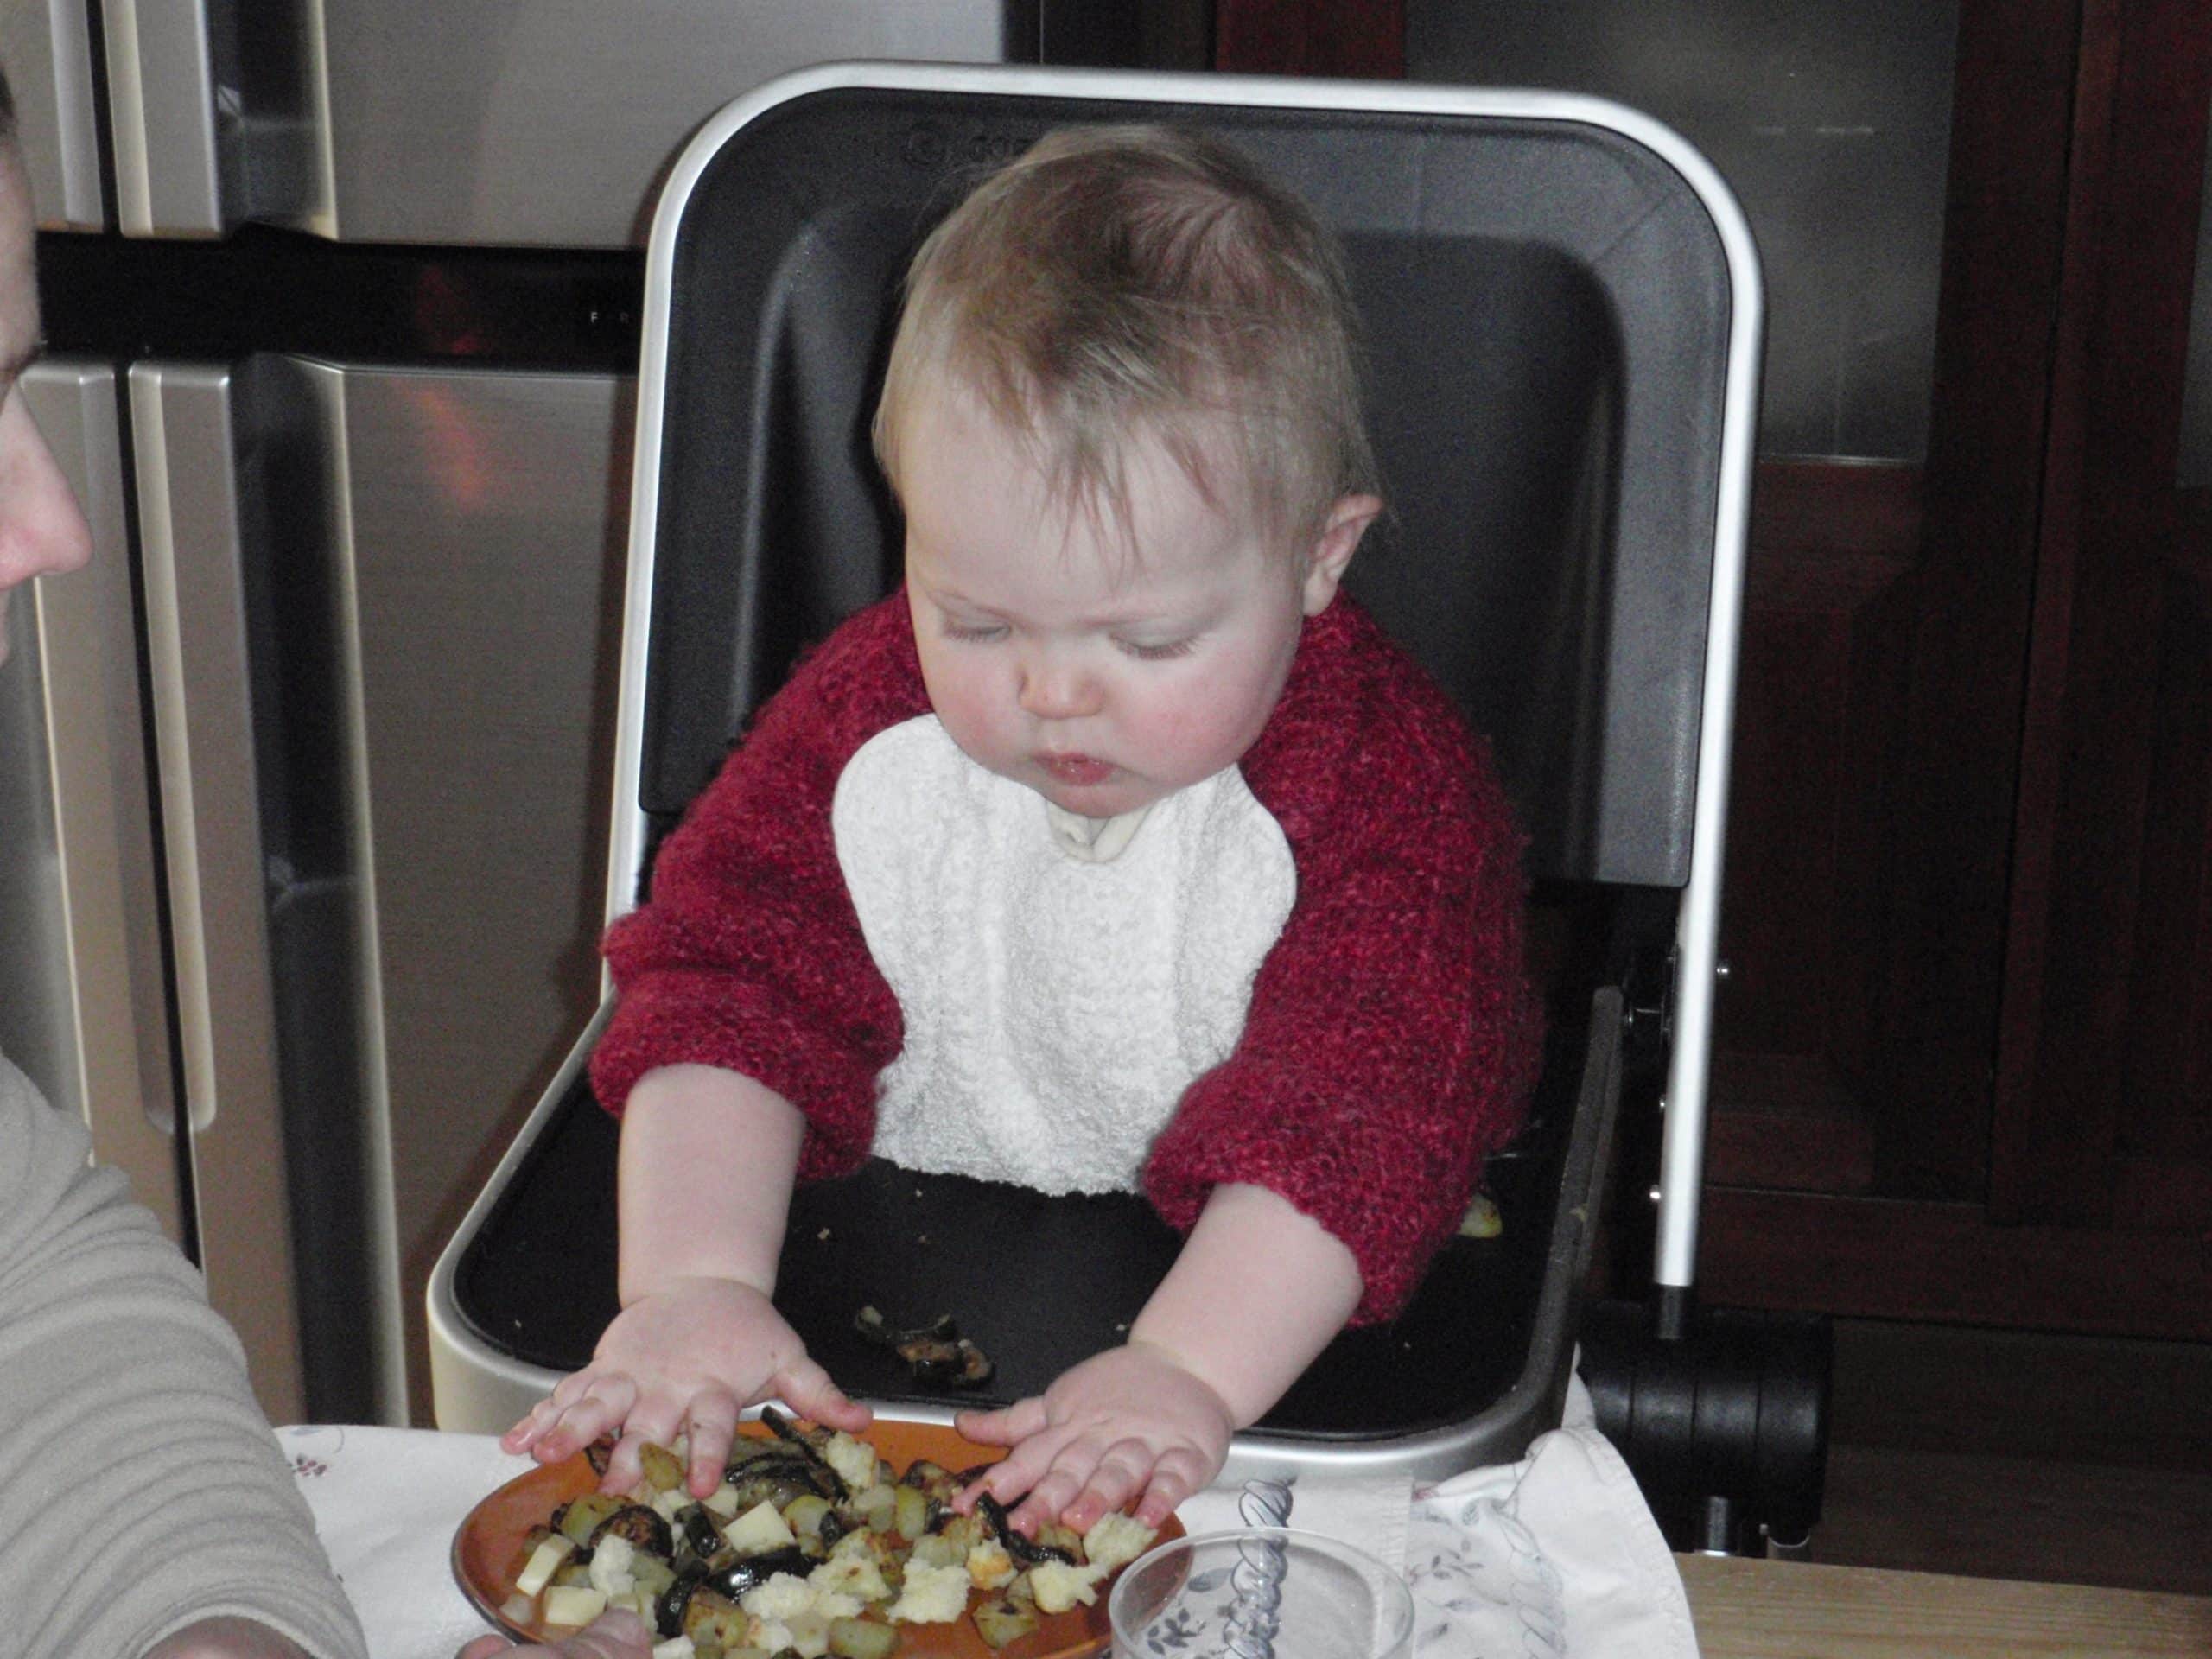 Bambina procede a svezzarsi da sola mangiando la pasta